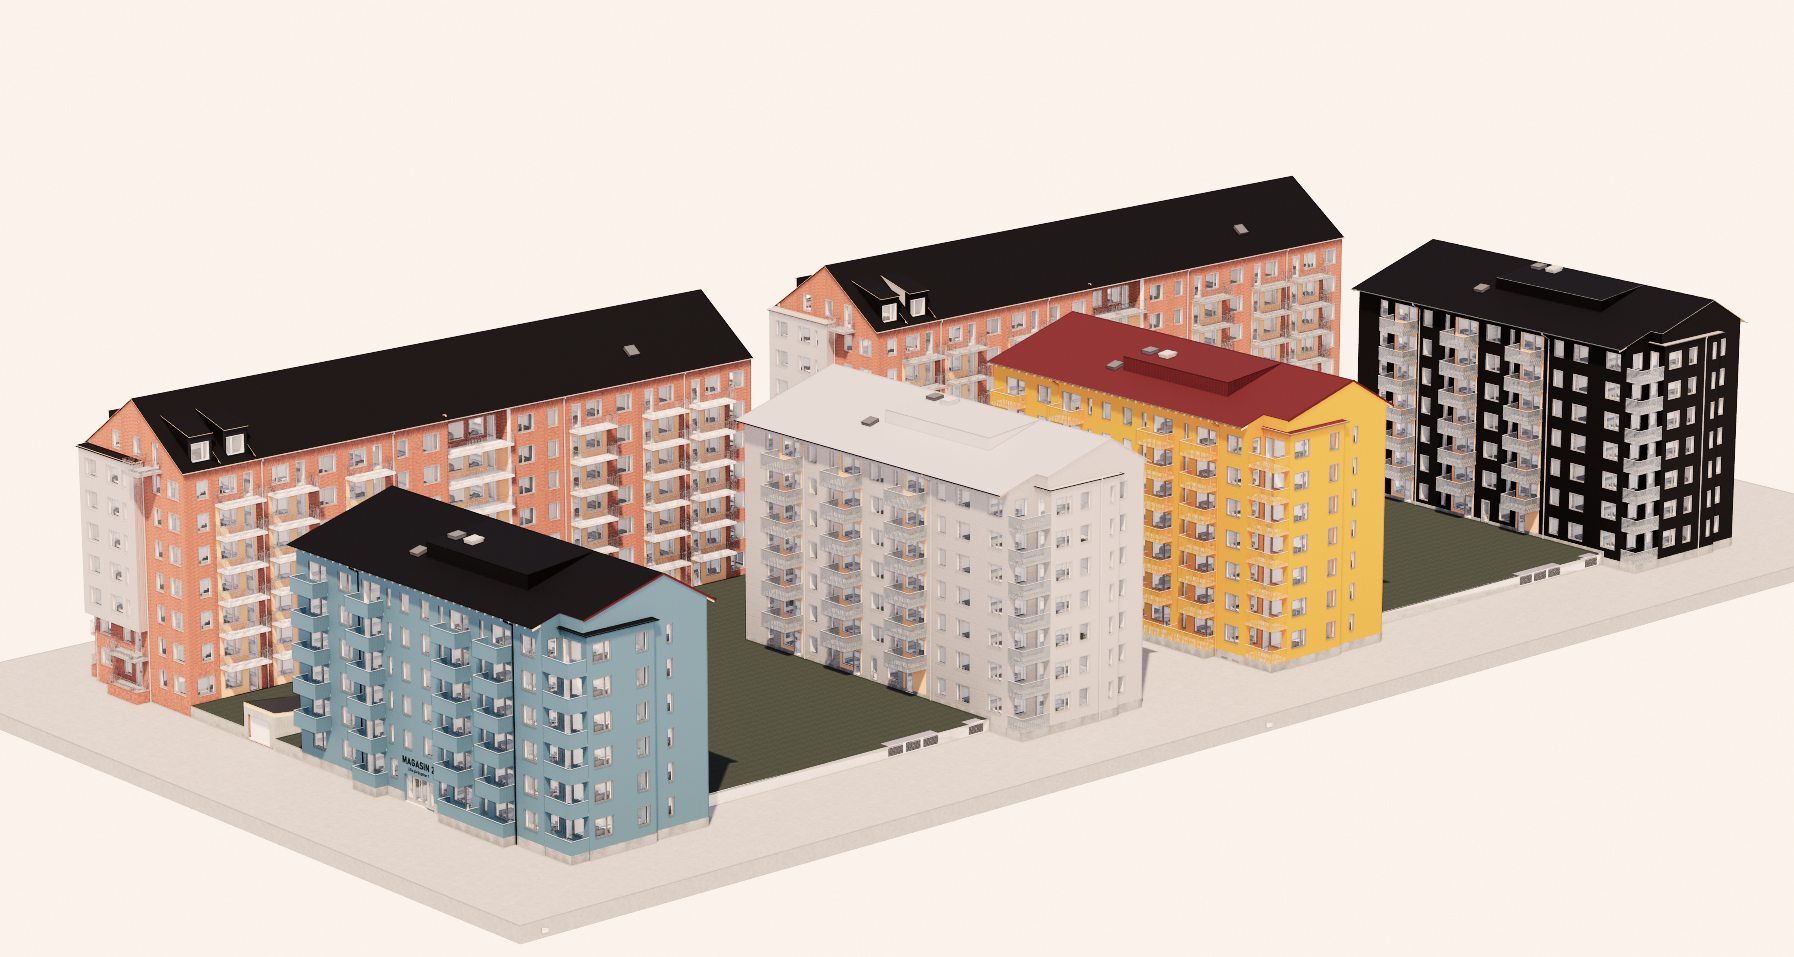 Consto ska på uppdrag av Magnolia Bostasd bygga cirk 900 lägenheter i Karlstad. Bild: Magnolia Bostad